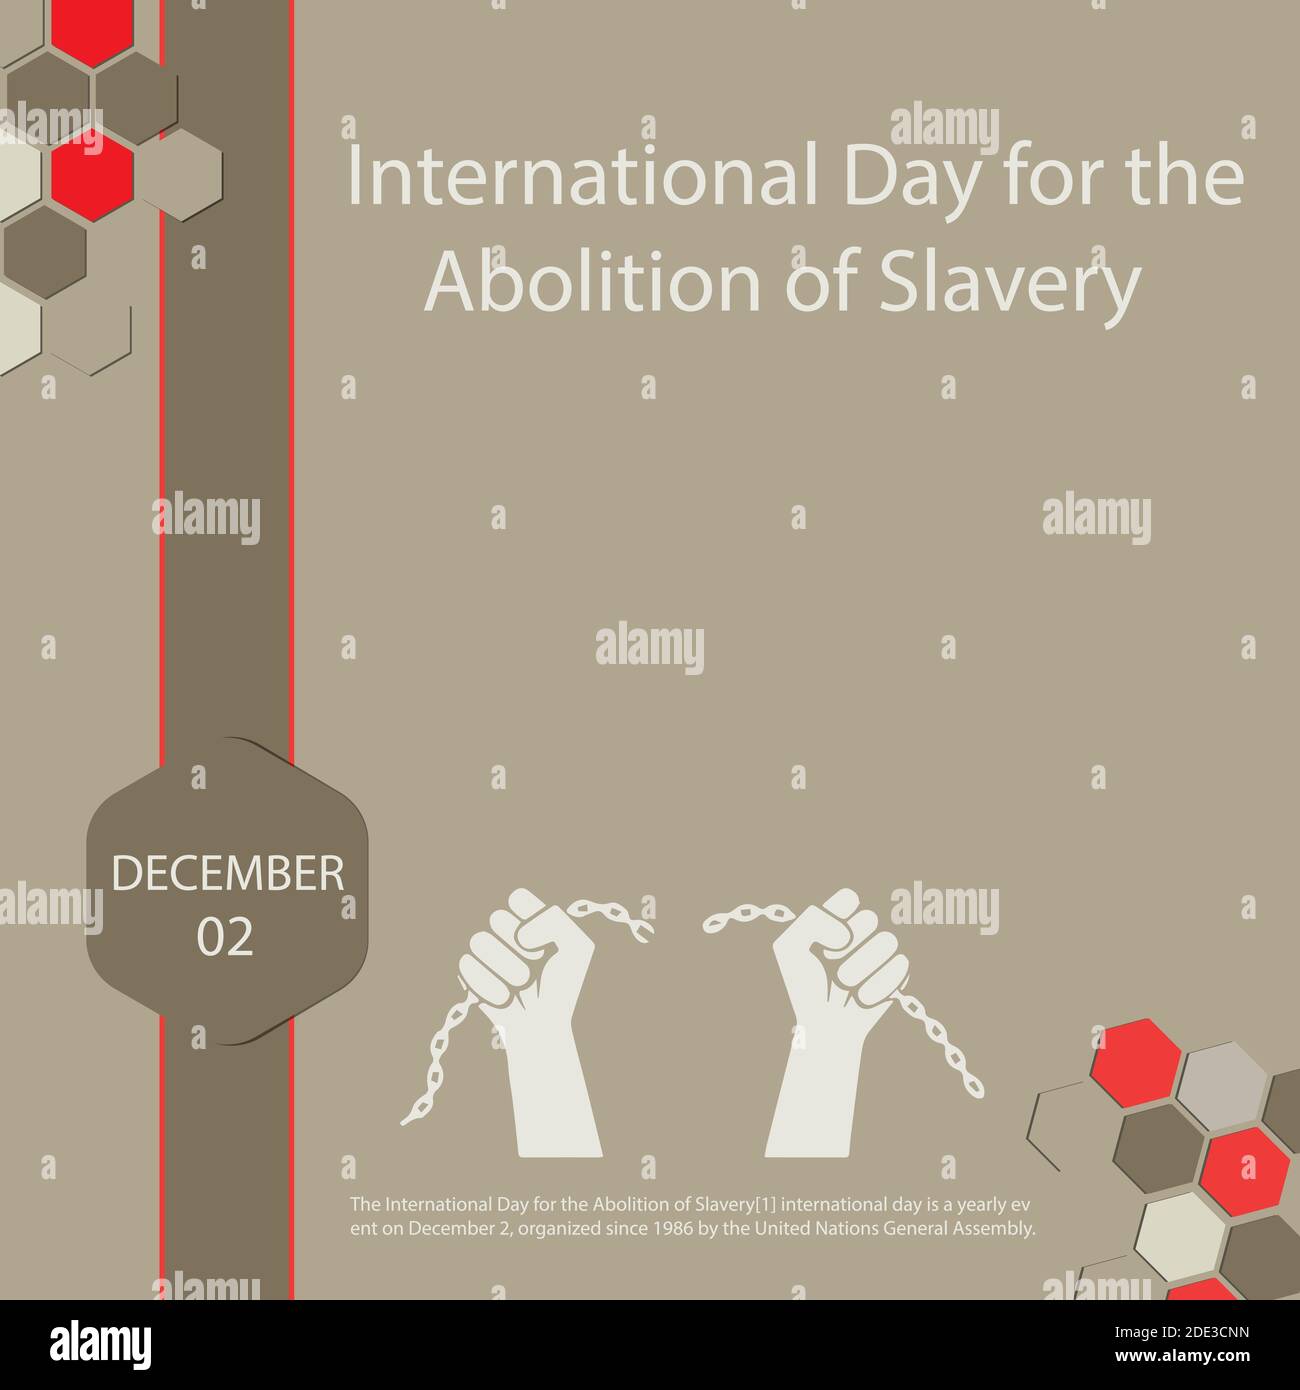 La Journée internationale pour l'abolition de l'esclavage est un événement annuel organisé depuis 1986 par le Gener des Nations Unies le 2 décembre Illustration de Vecteur